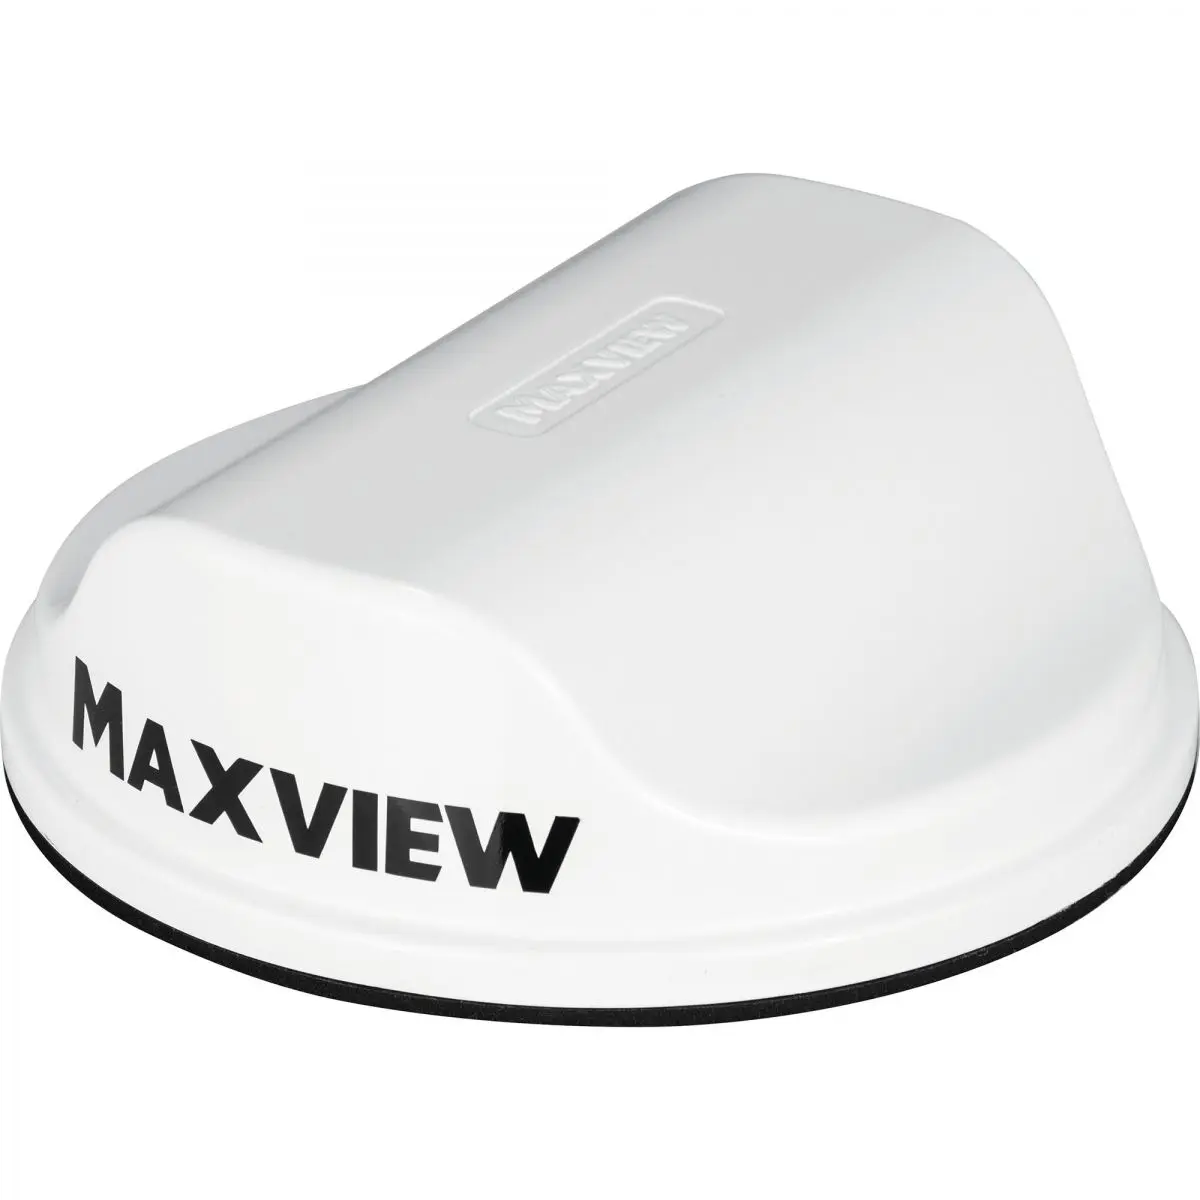 Anténa LTE/WiFi Maxview Roam, biela